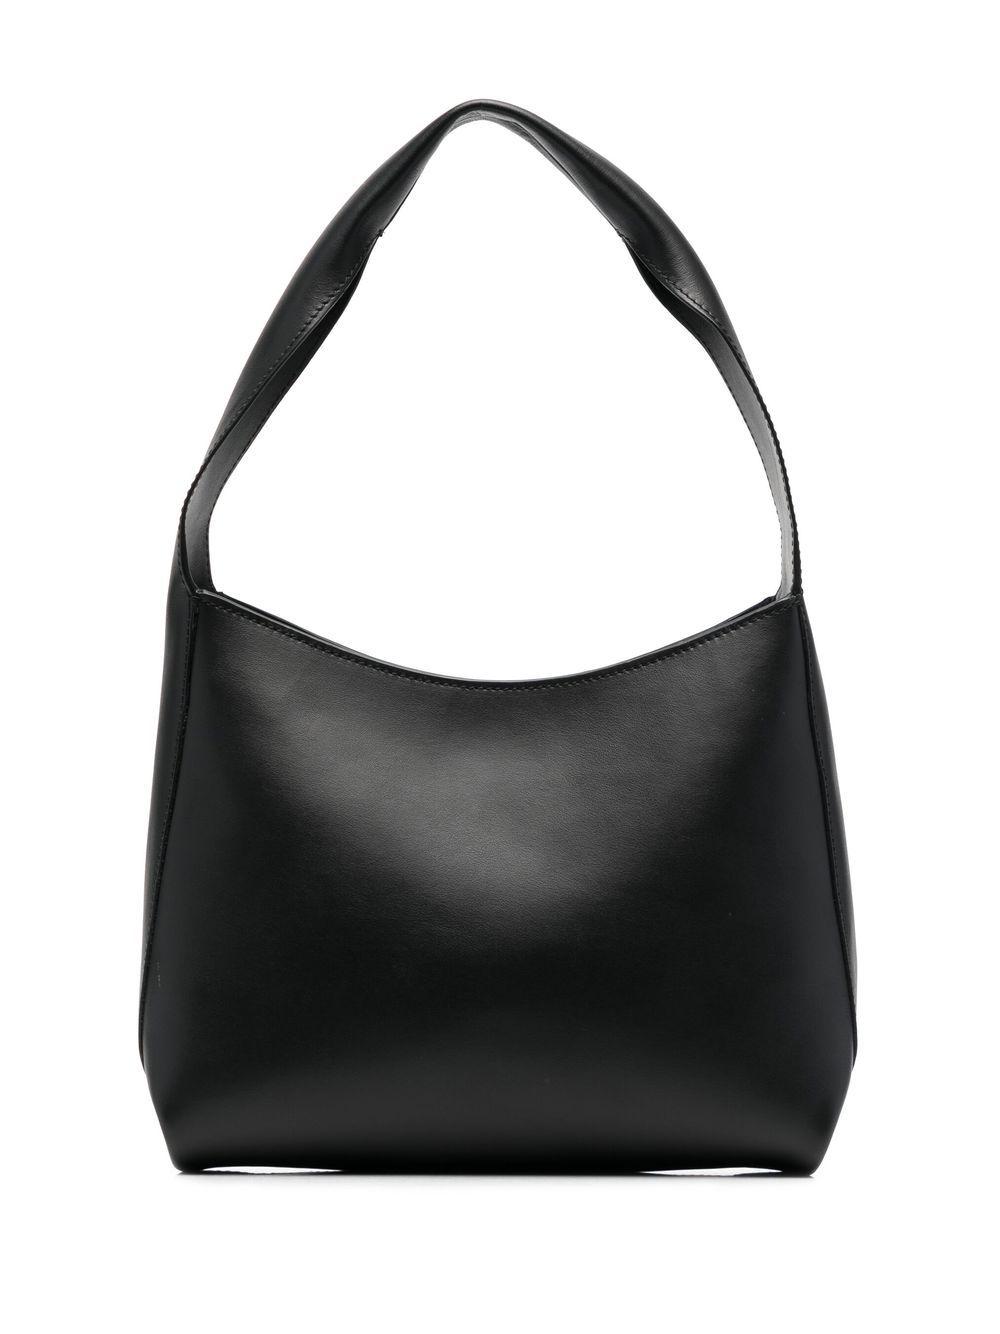 Filippa K Nola Structured Shoulder Bag in Black | Lyst